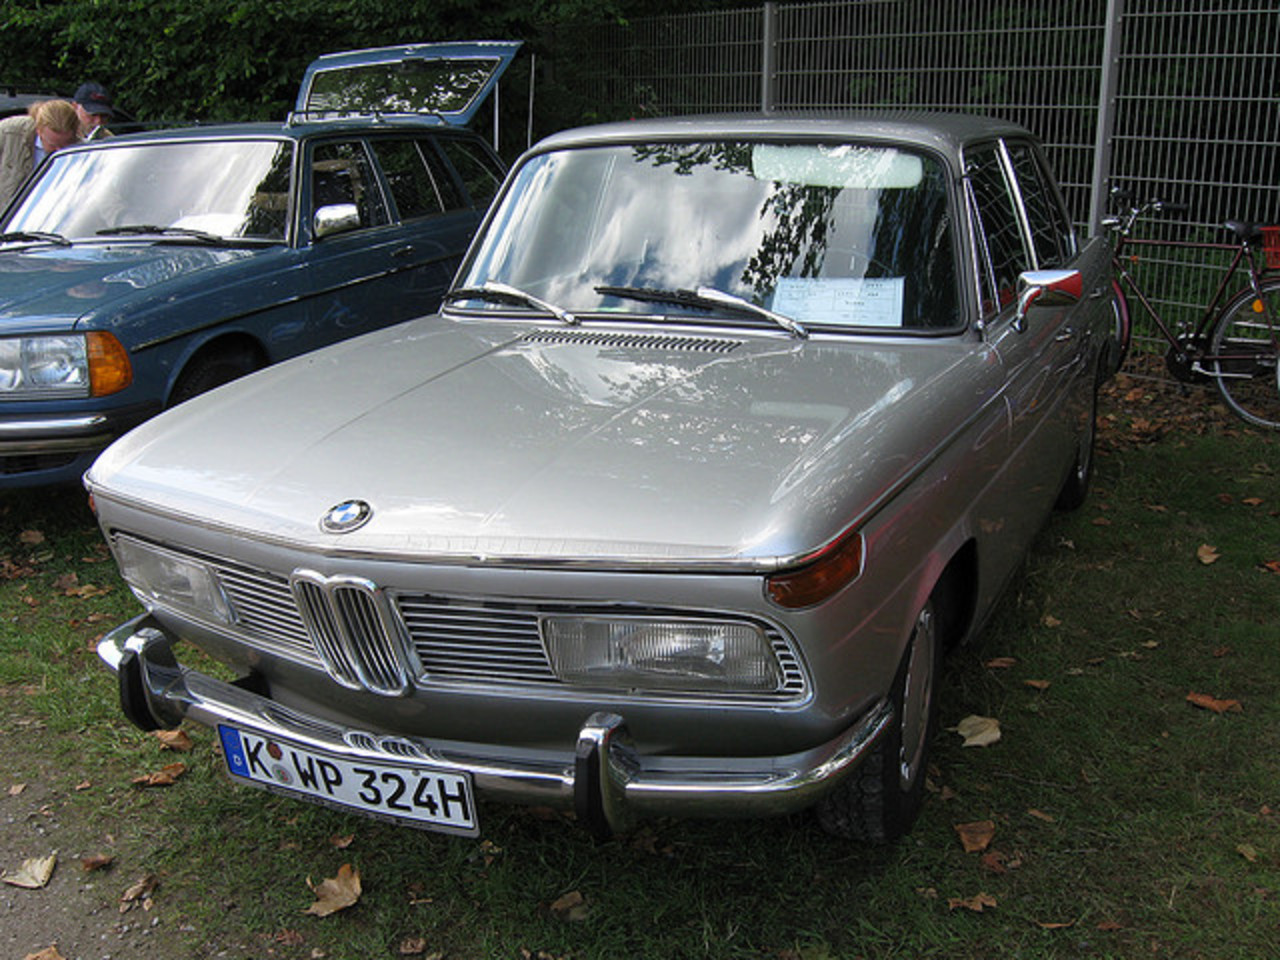 BMW 1800 1971 / Flickr - Partage de photos!